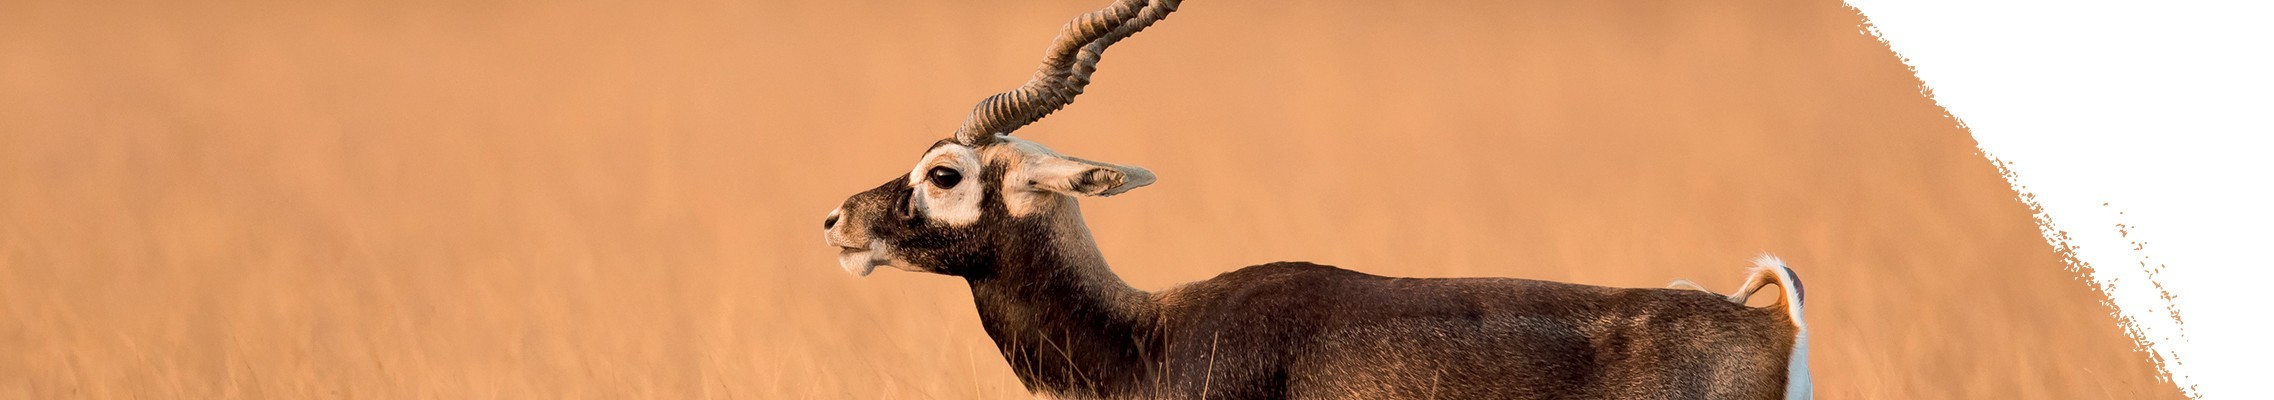 Antilopa jelení